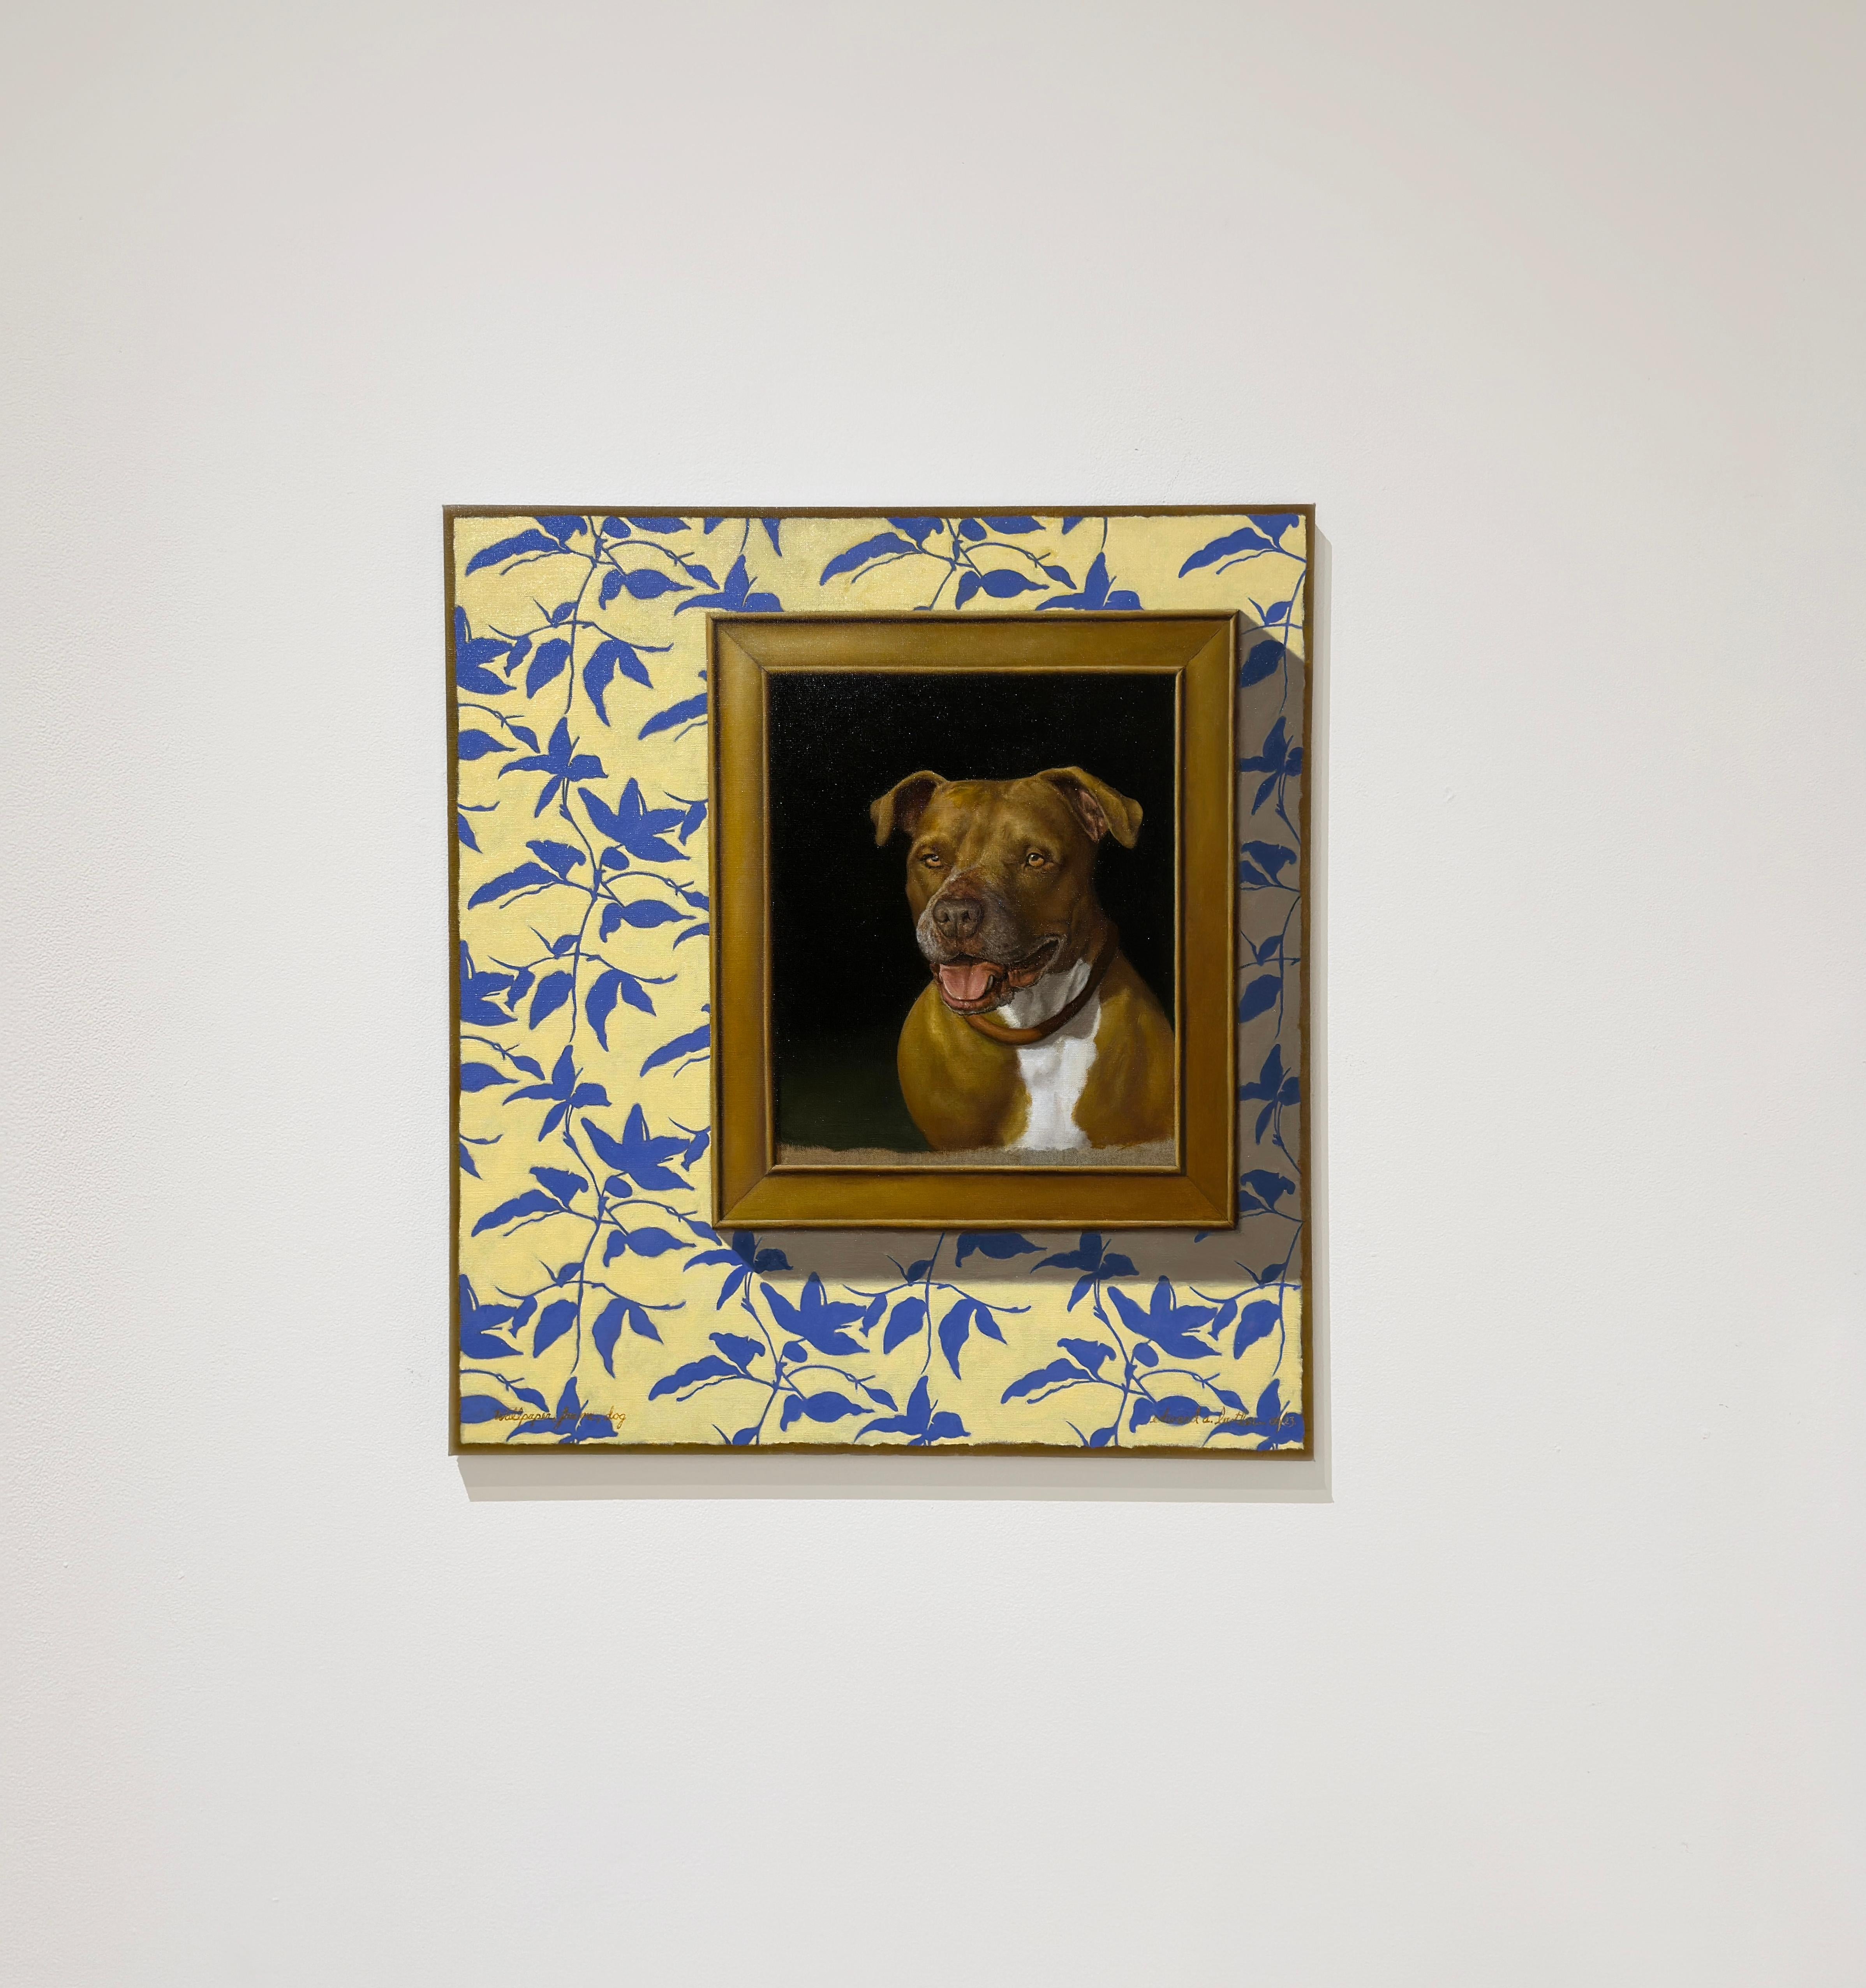 WALLPAPER, FRAME, DOG - Réalisme / Humor / Pitbull - Painting de Edward Butler